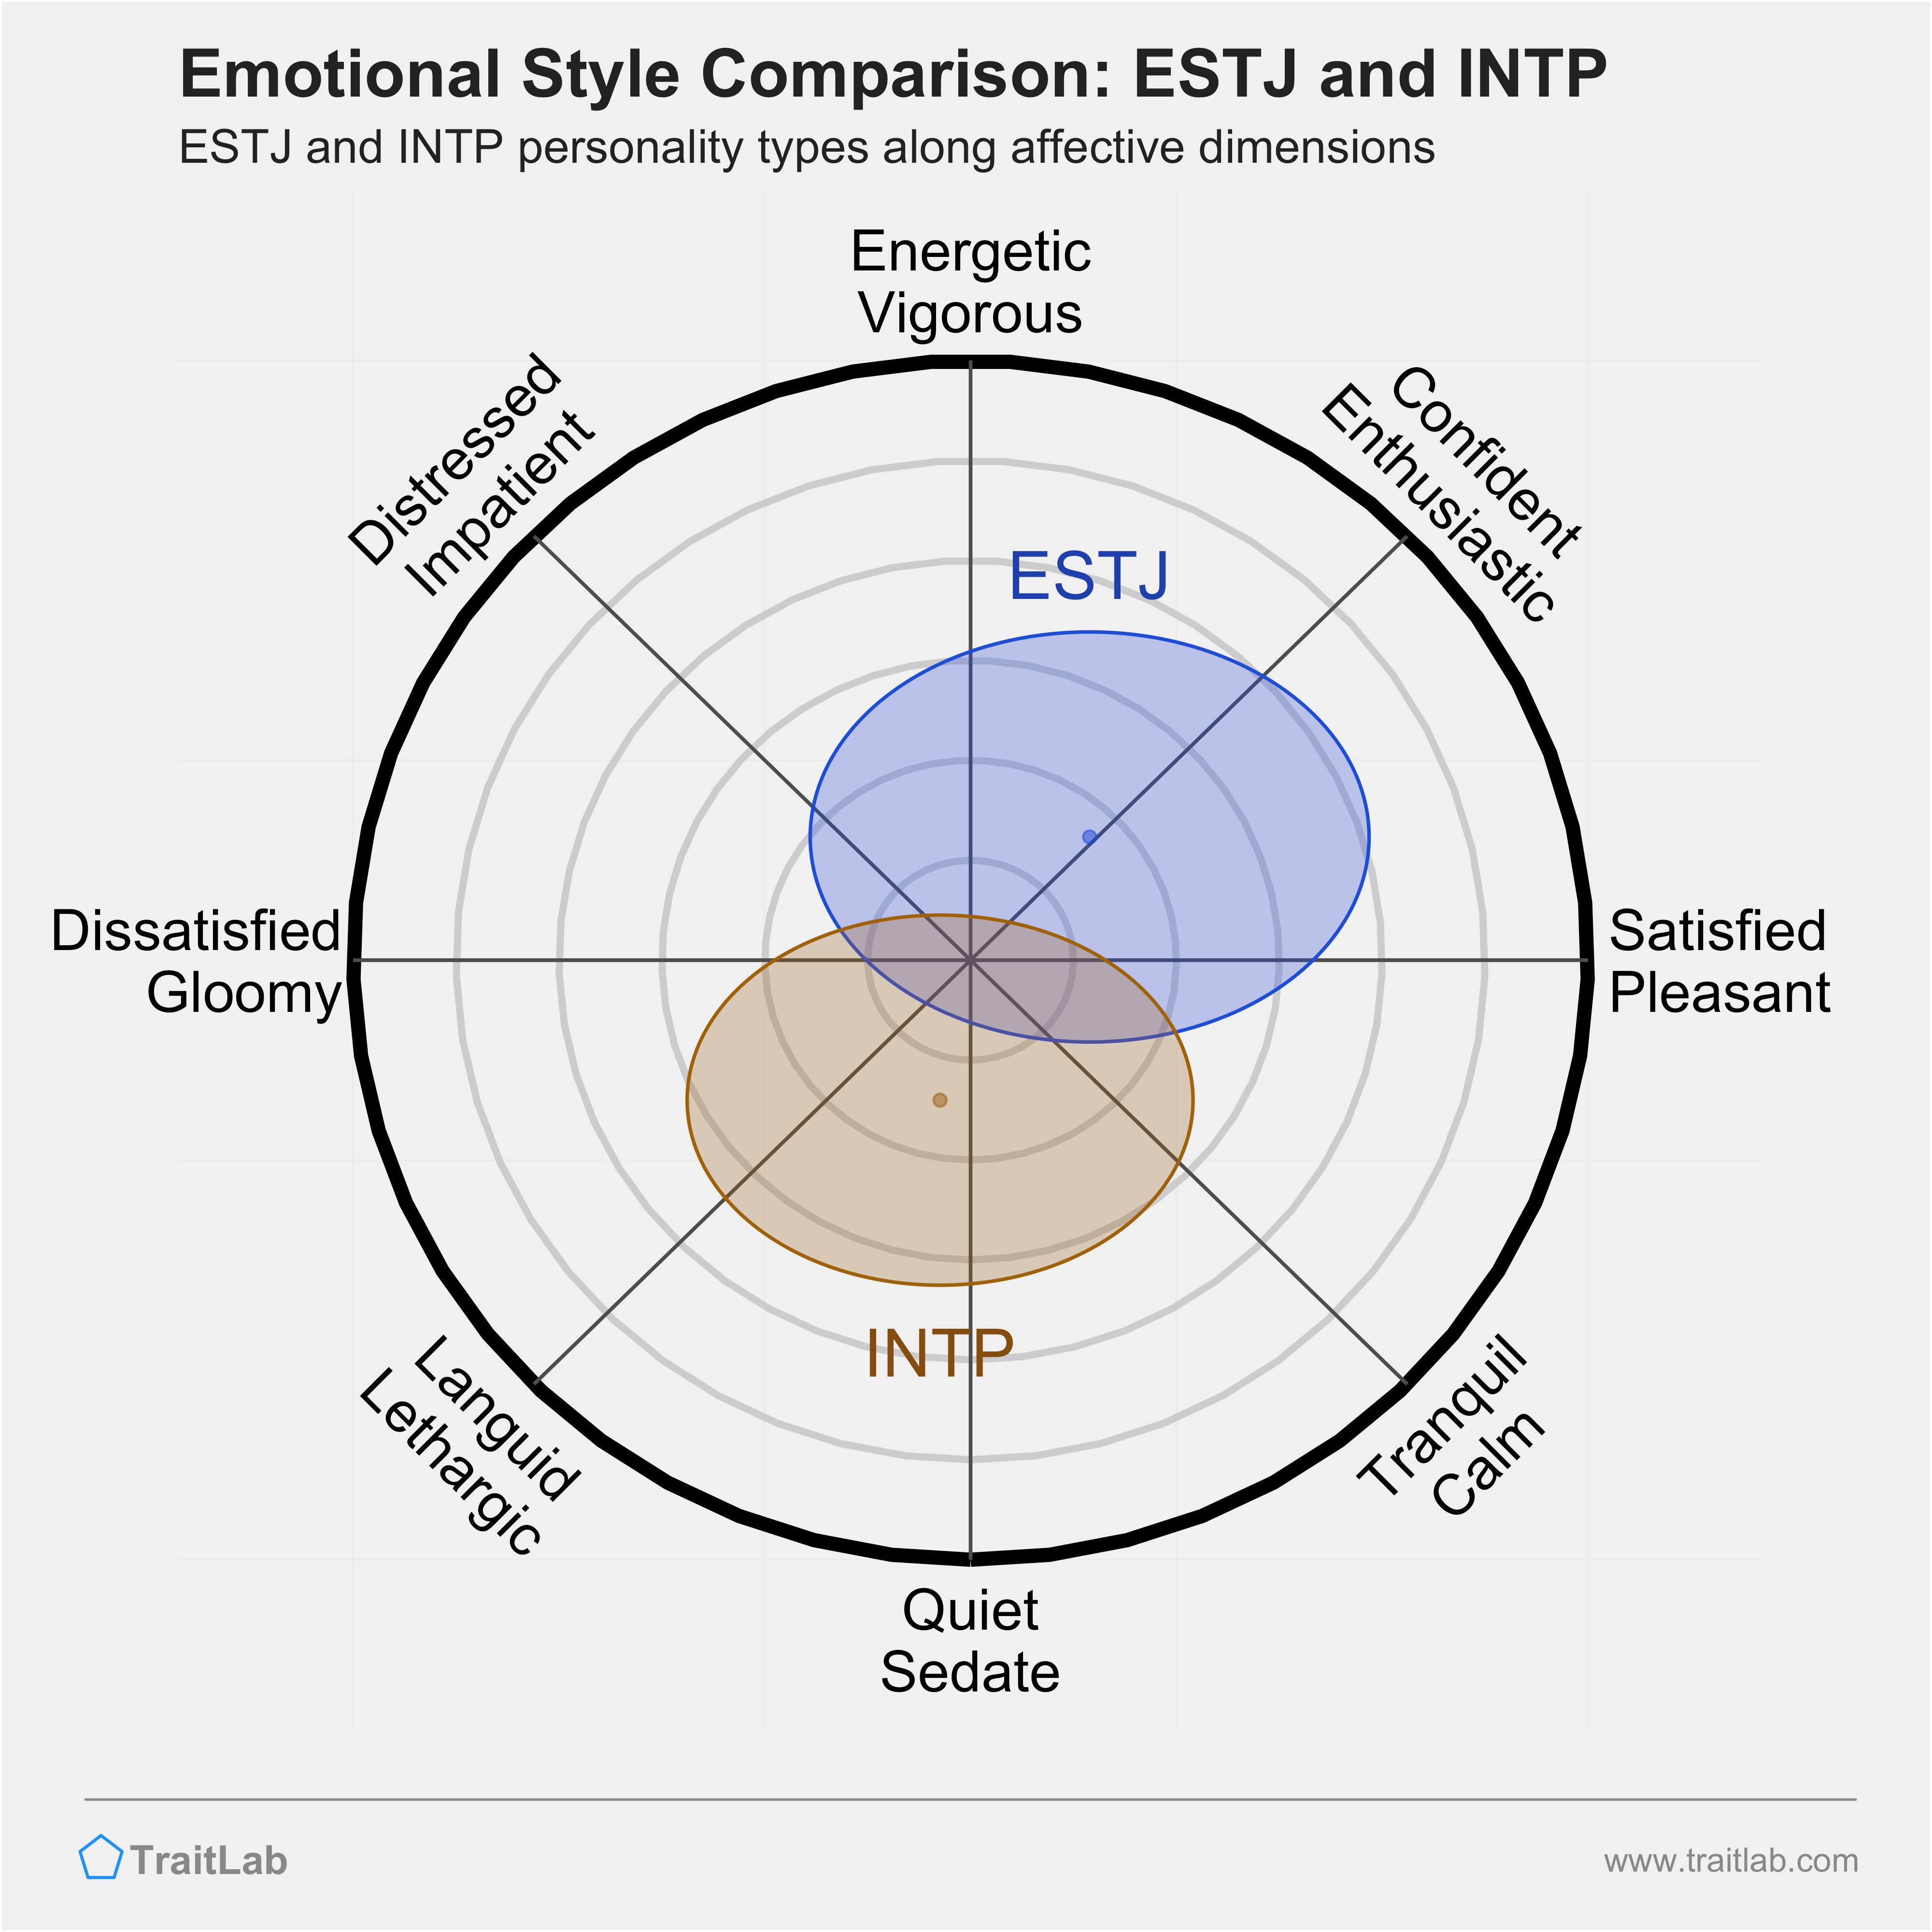 ESTJ and INTP comparison across emotional (affective) dimensions